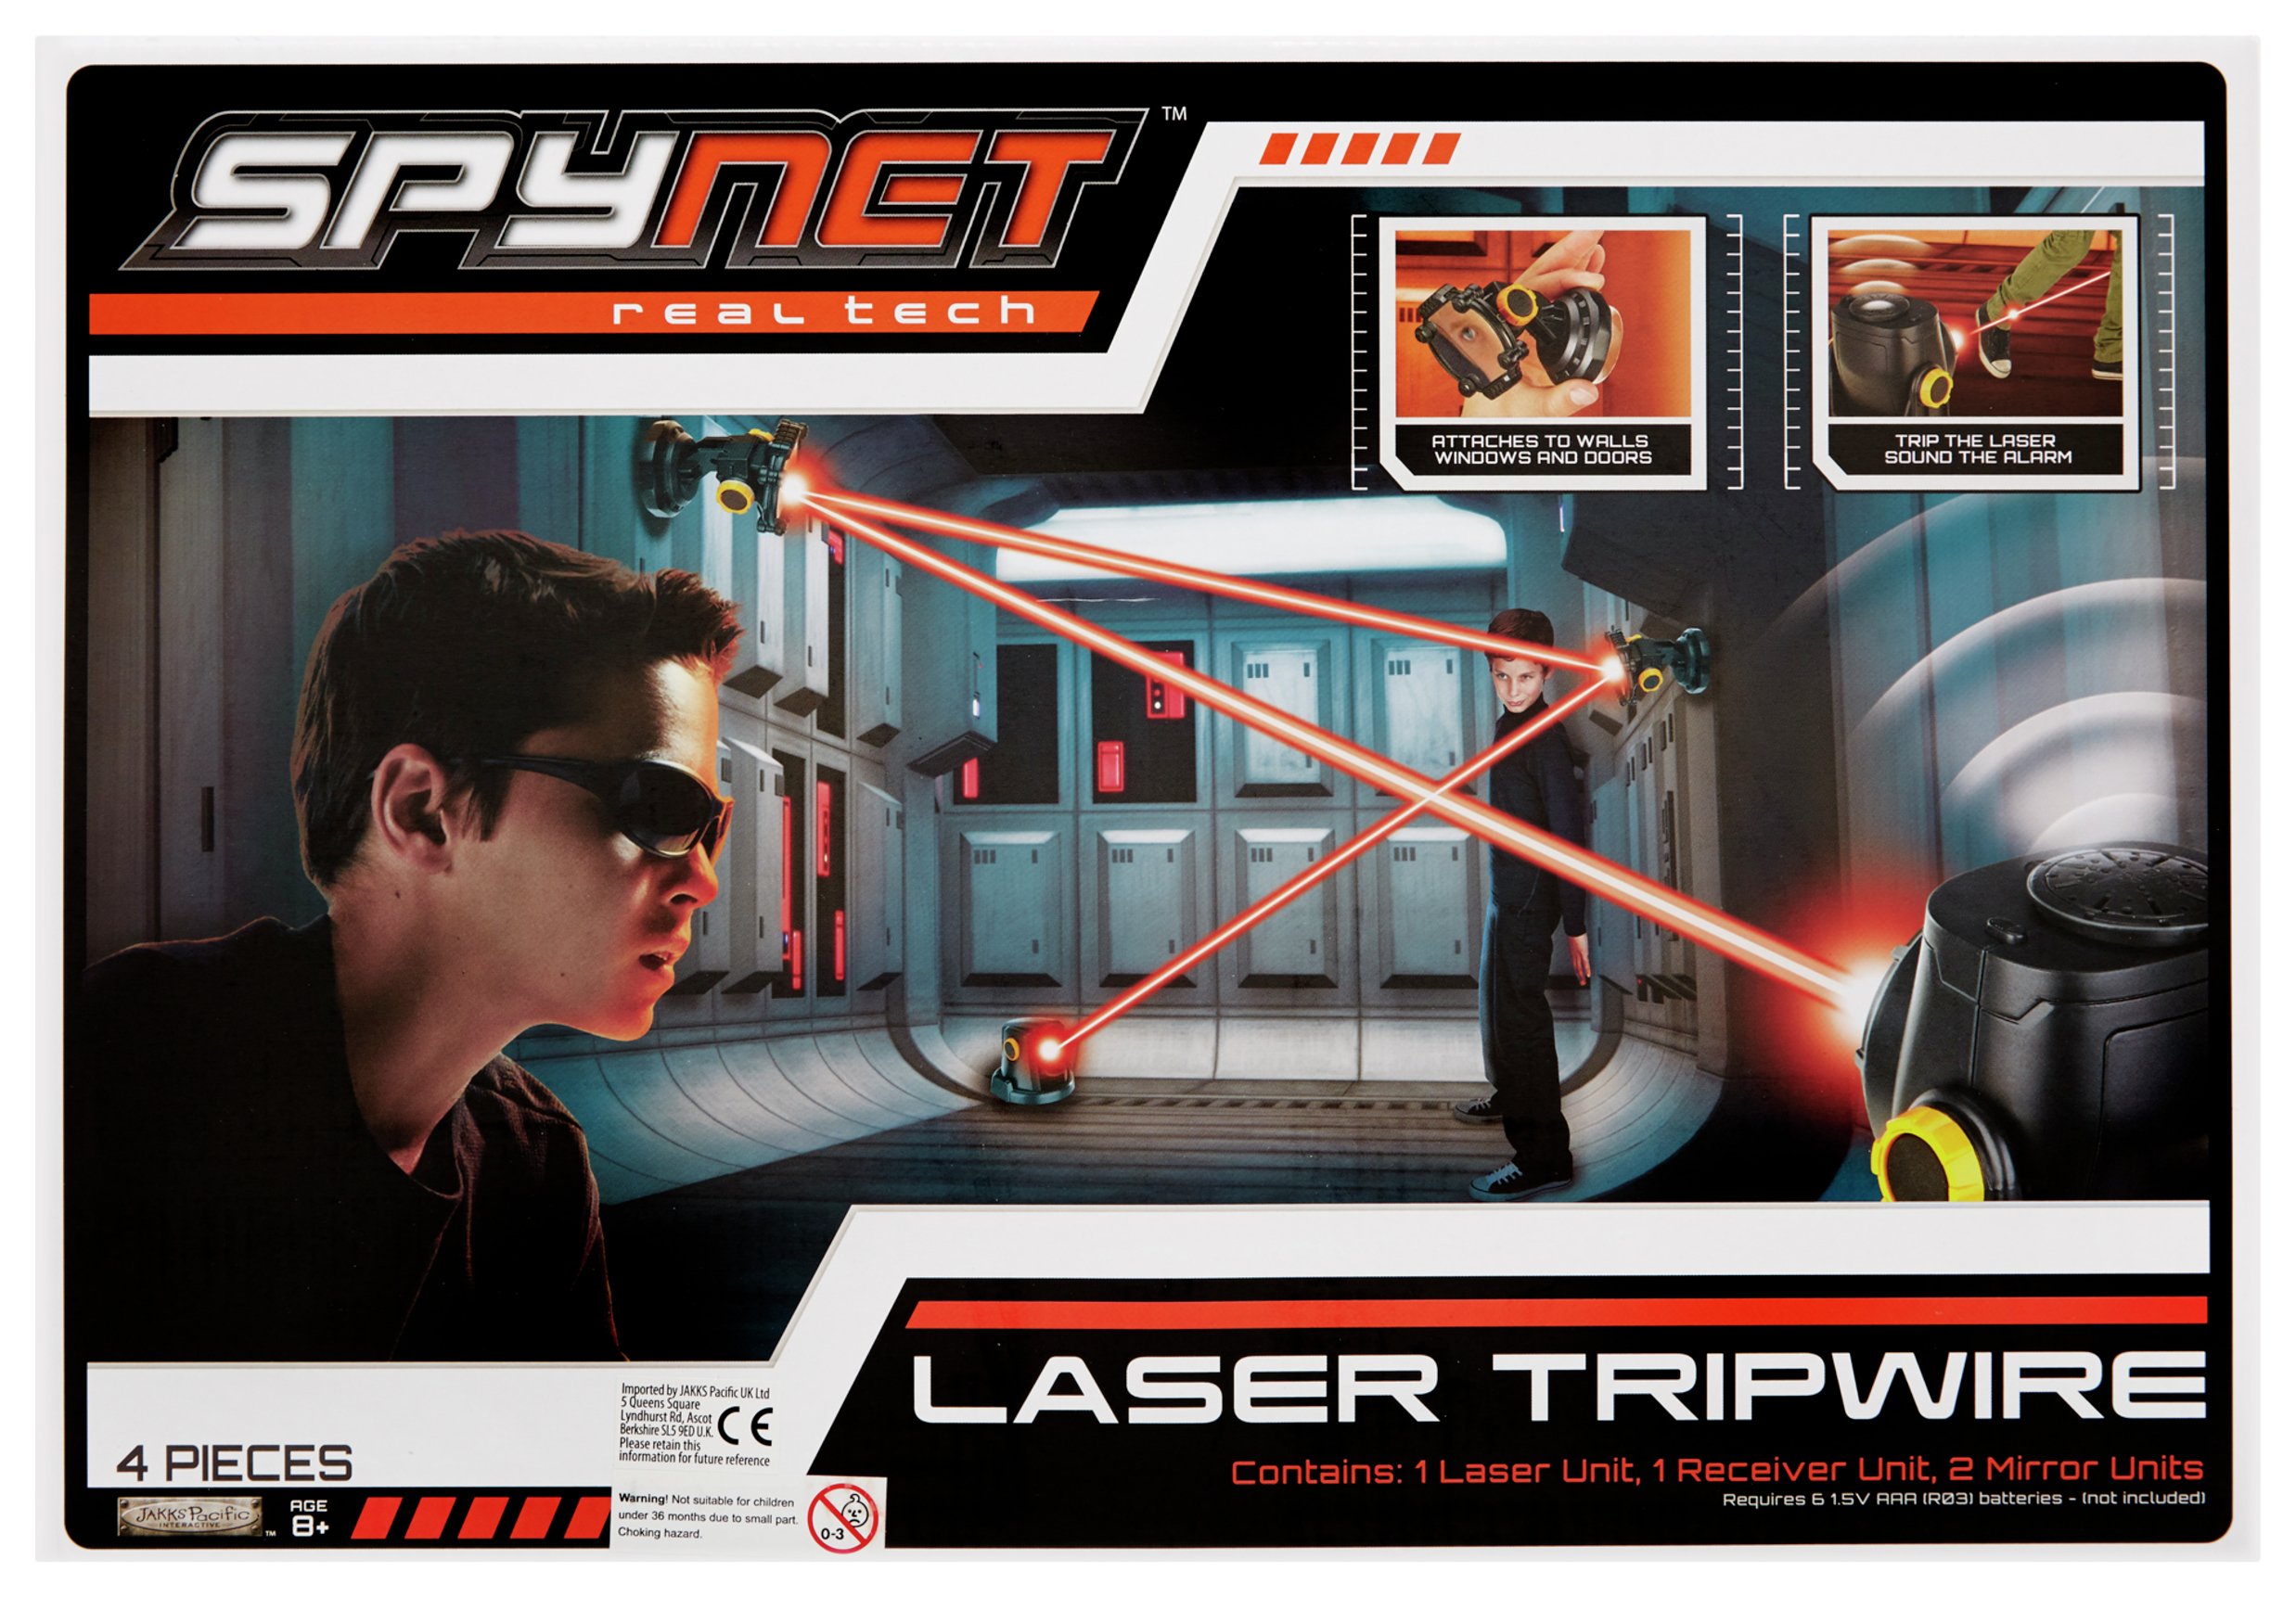 SpyNet Laser Trip Wire